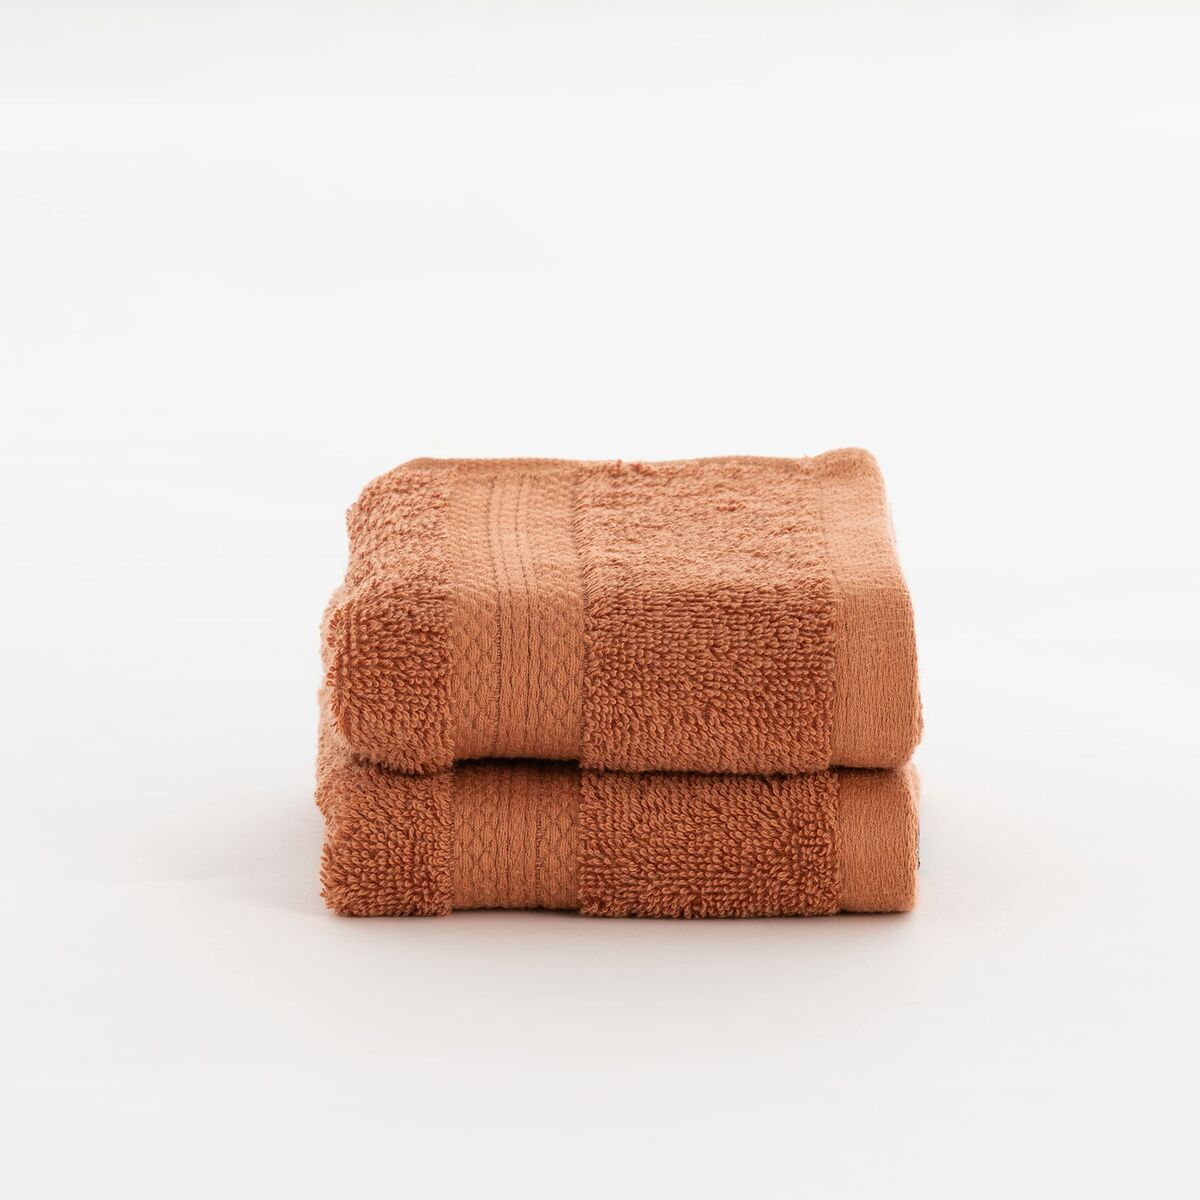 Bath towel SG Hogar Orange 50x100 cm - 2 pieces